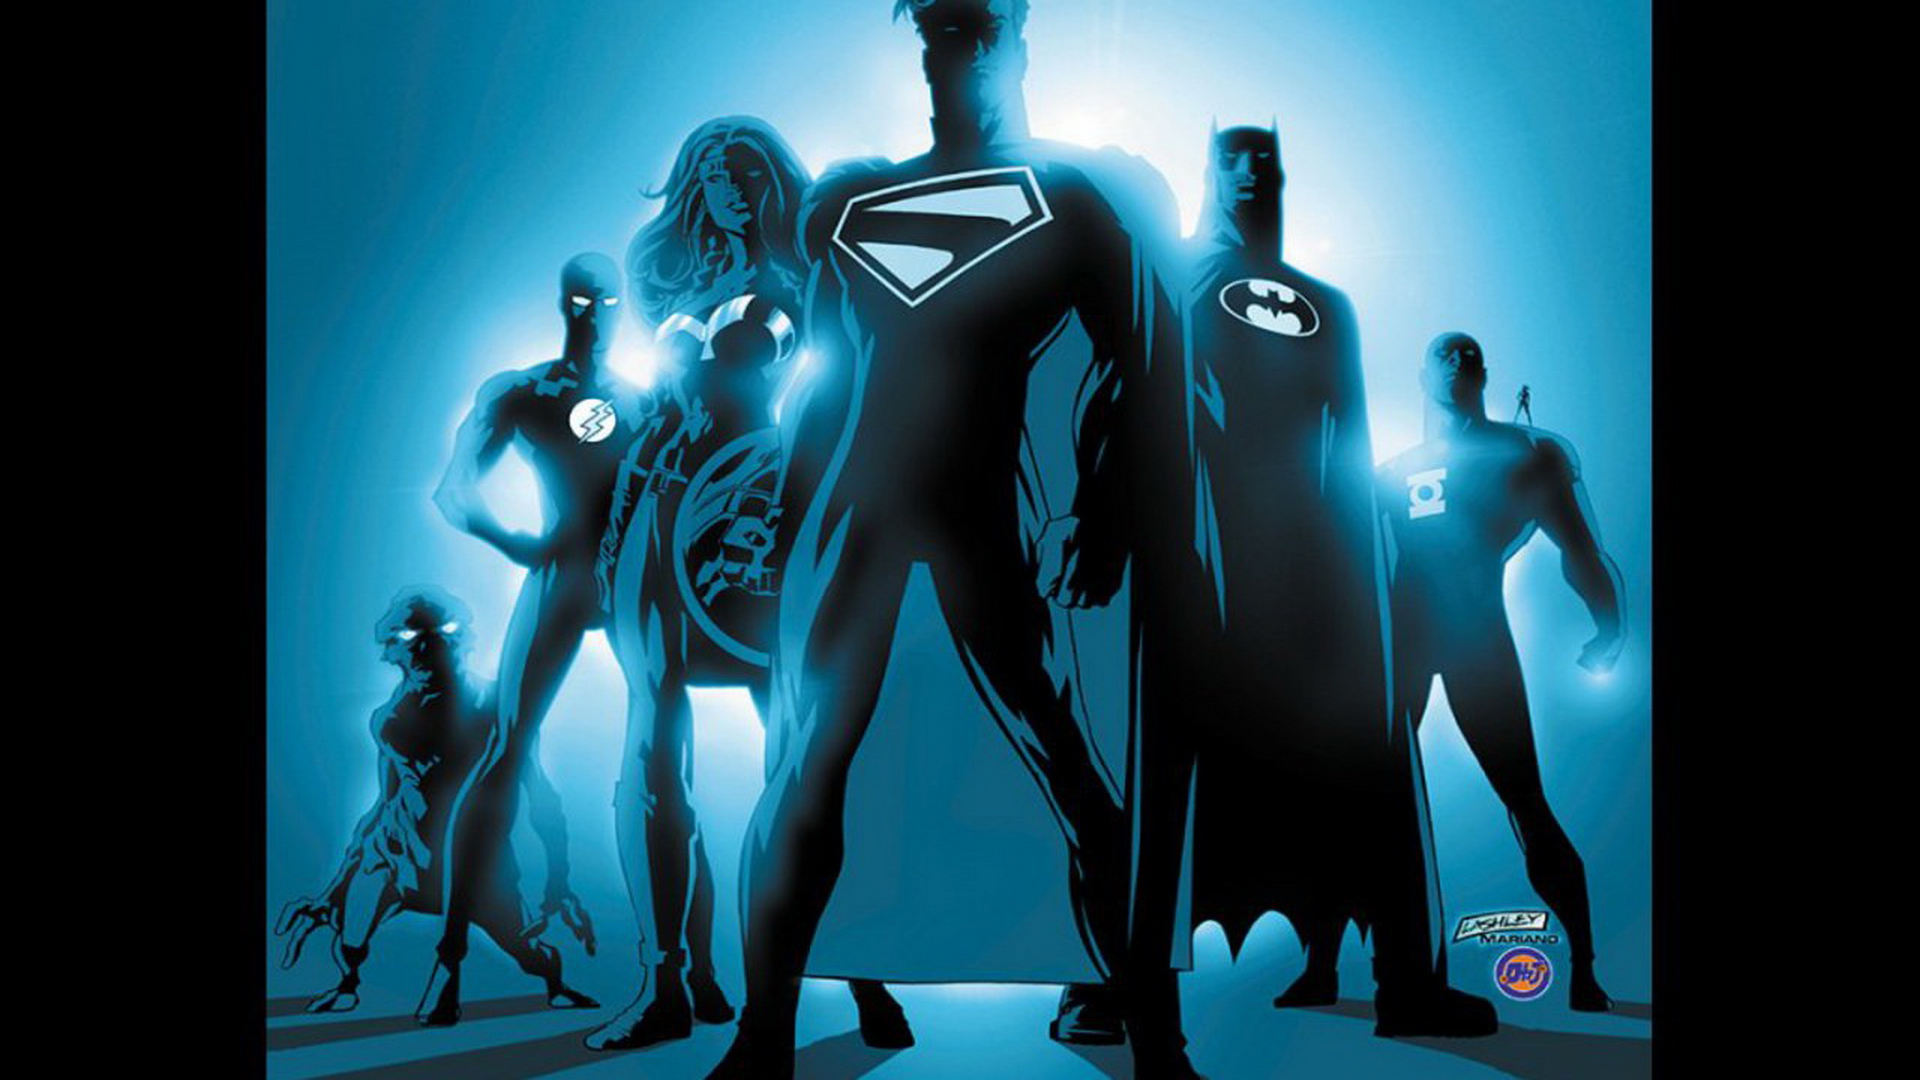 41+] Justice League Wallpaper HD - WallpaperSafari